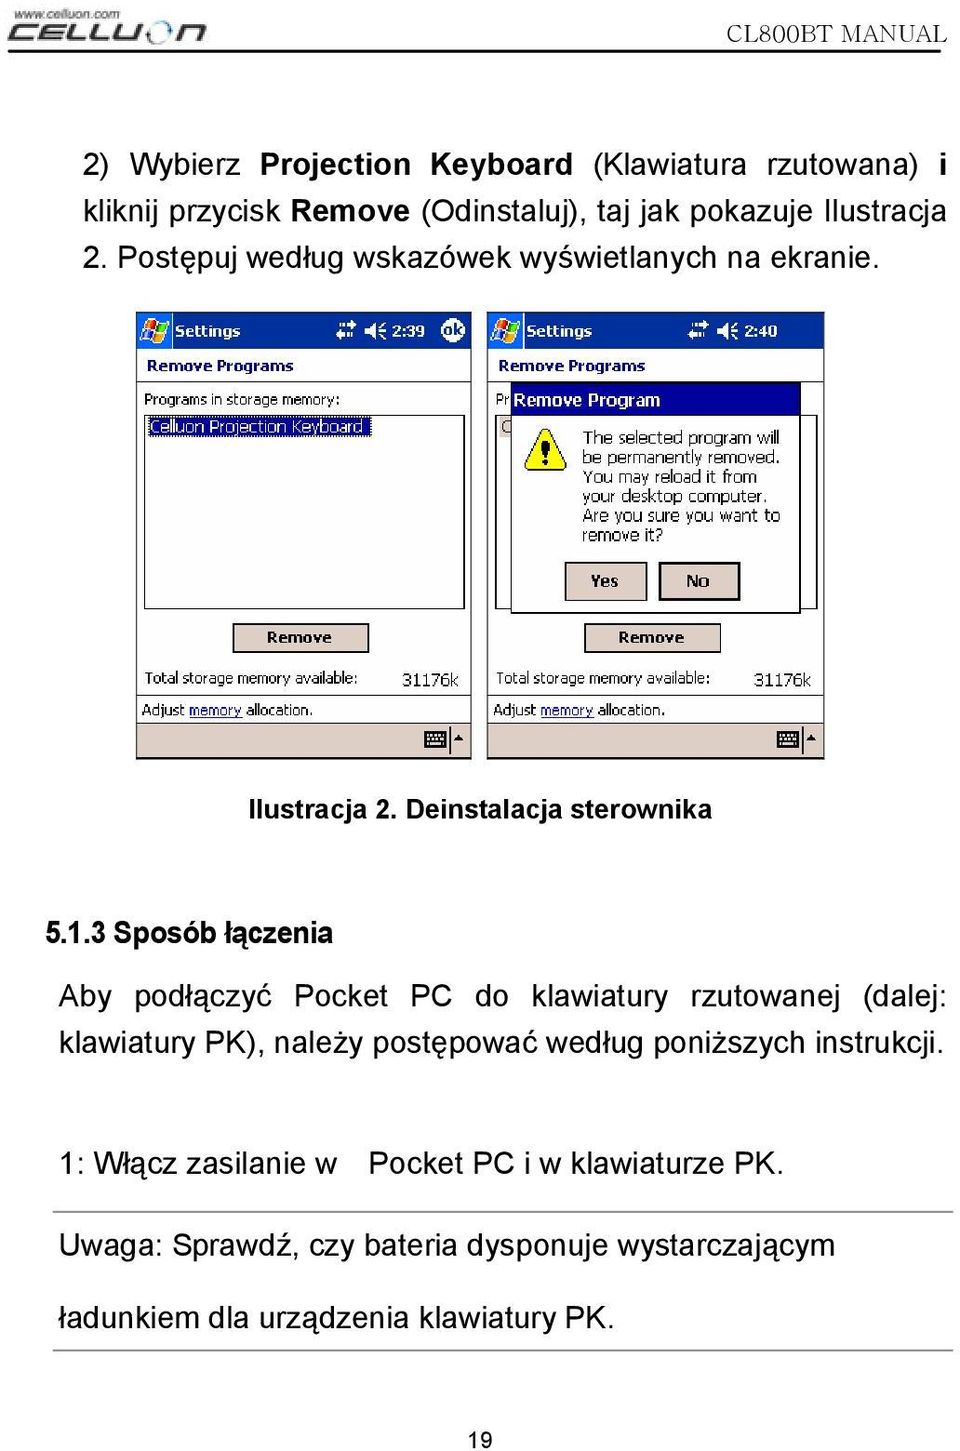 3 Sposób łączenia Aby podłączyć Pocket PC do klawiatury rzutowanej (dalej: klawiatury PK), należy postępować według